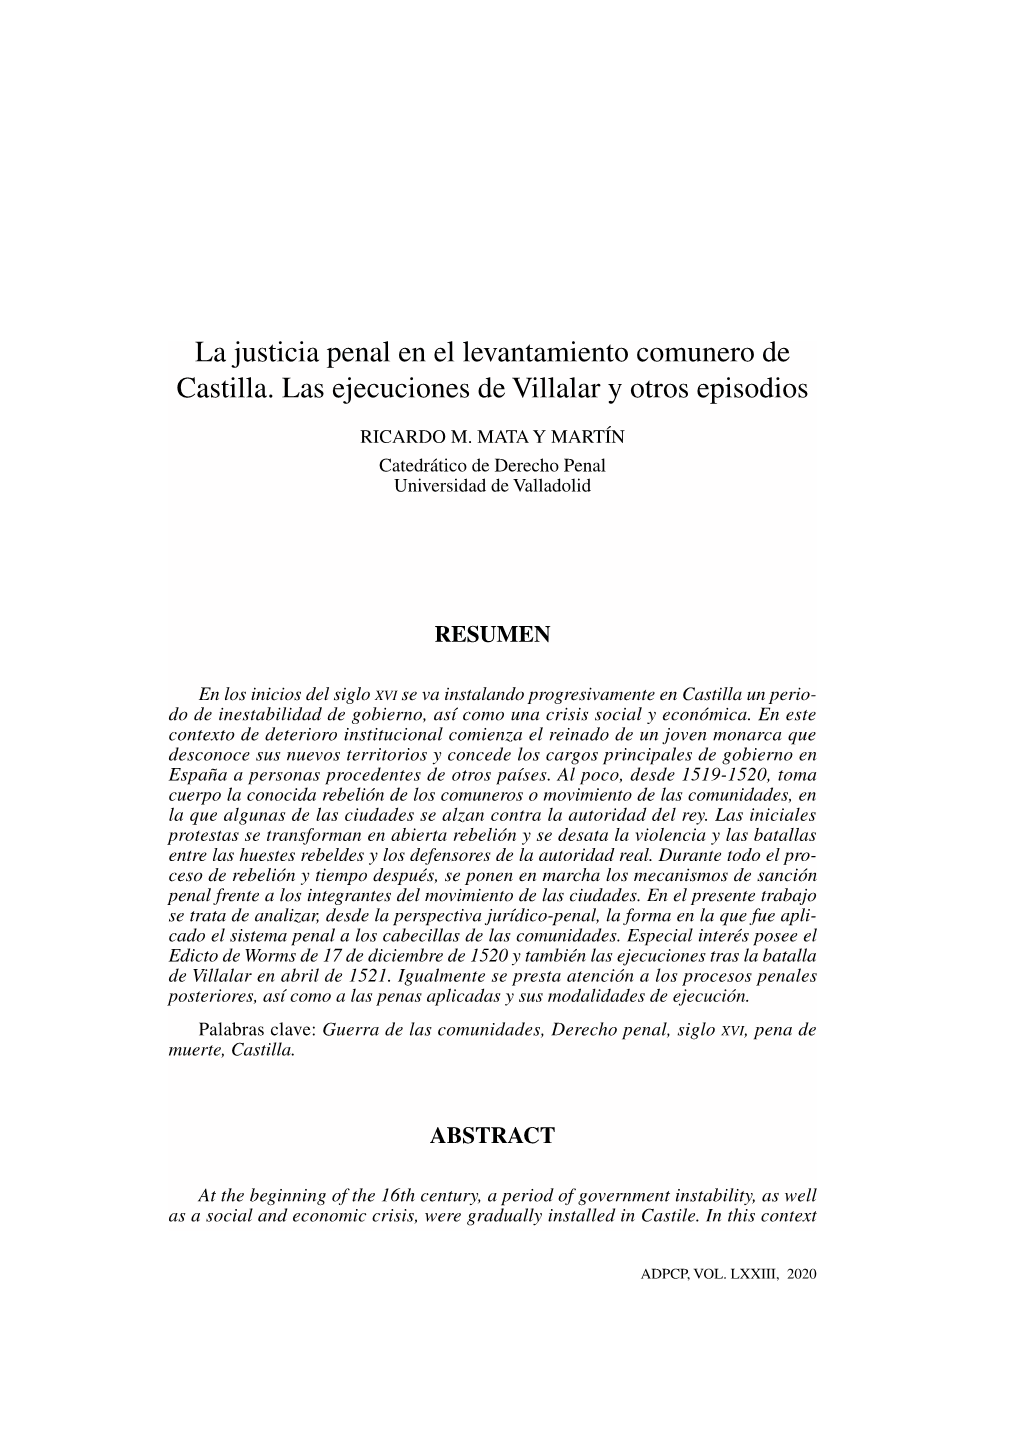 La Justicia Penal En El Levantamiento Comunero De Castilla. Las Ejecuciones De Villalar Y Otros Episodios